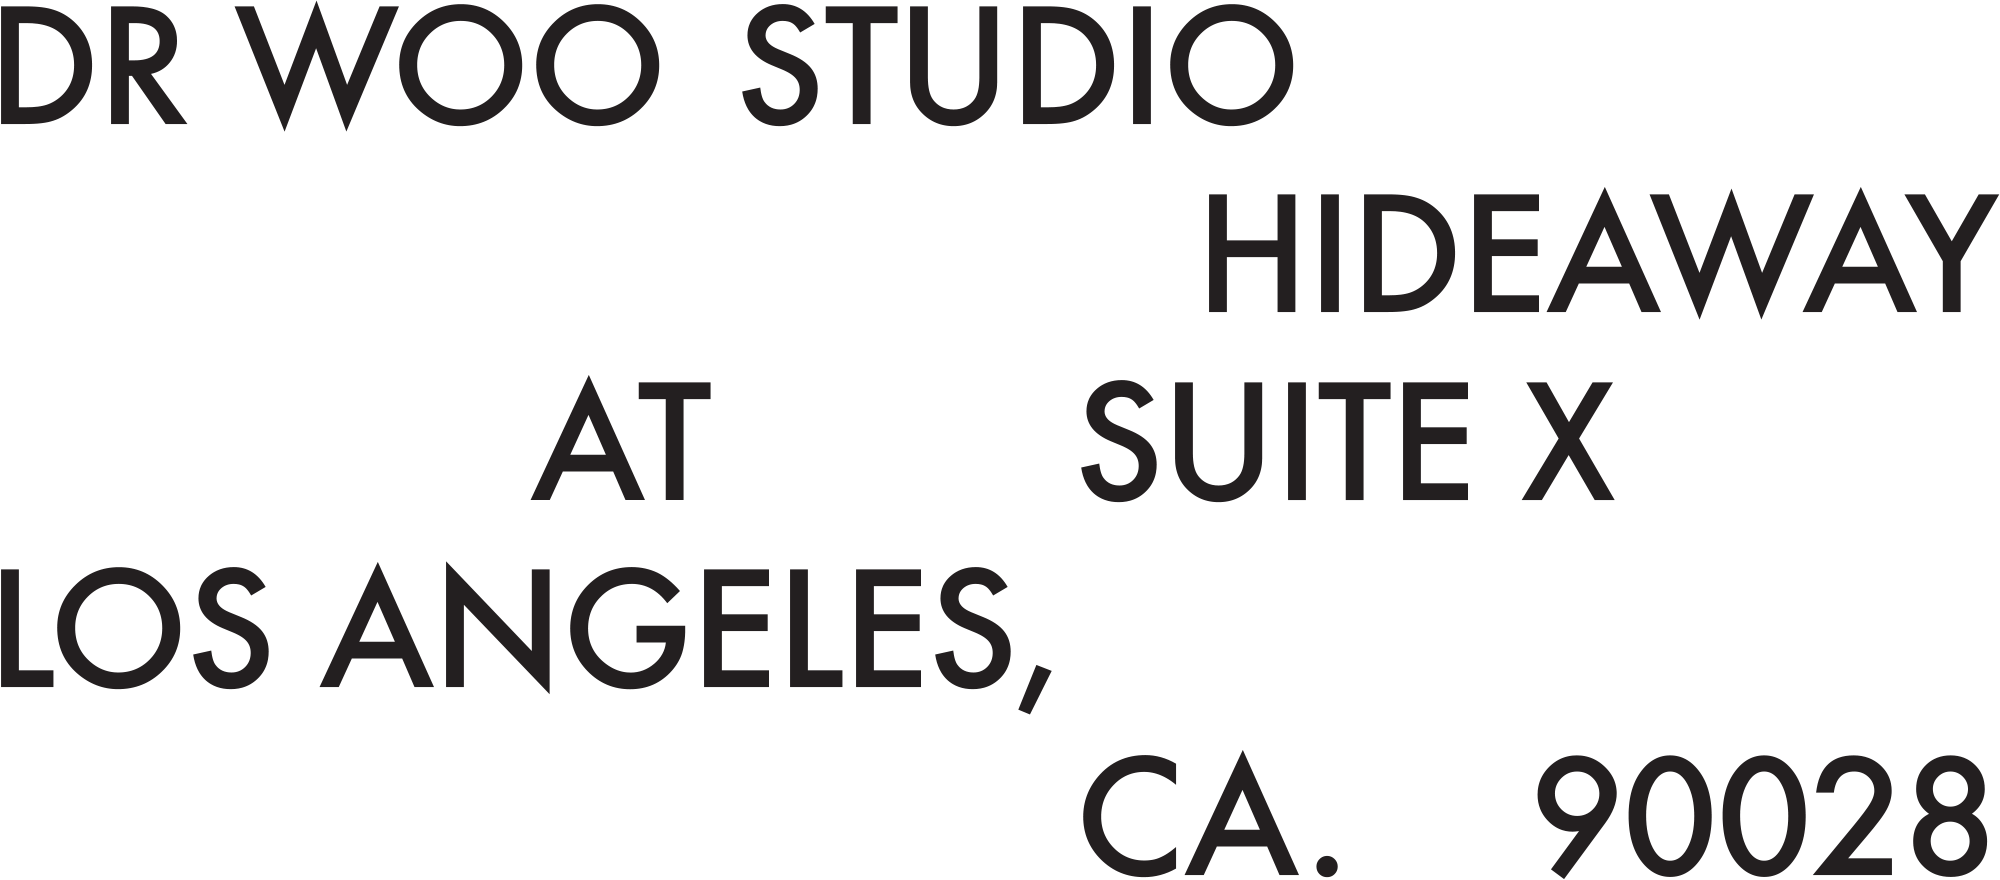 Dr. Woo Studio, Hideaway at Suite X, Los Angeles, CA 90028